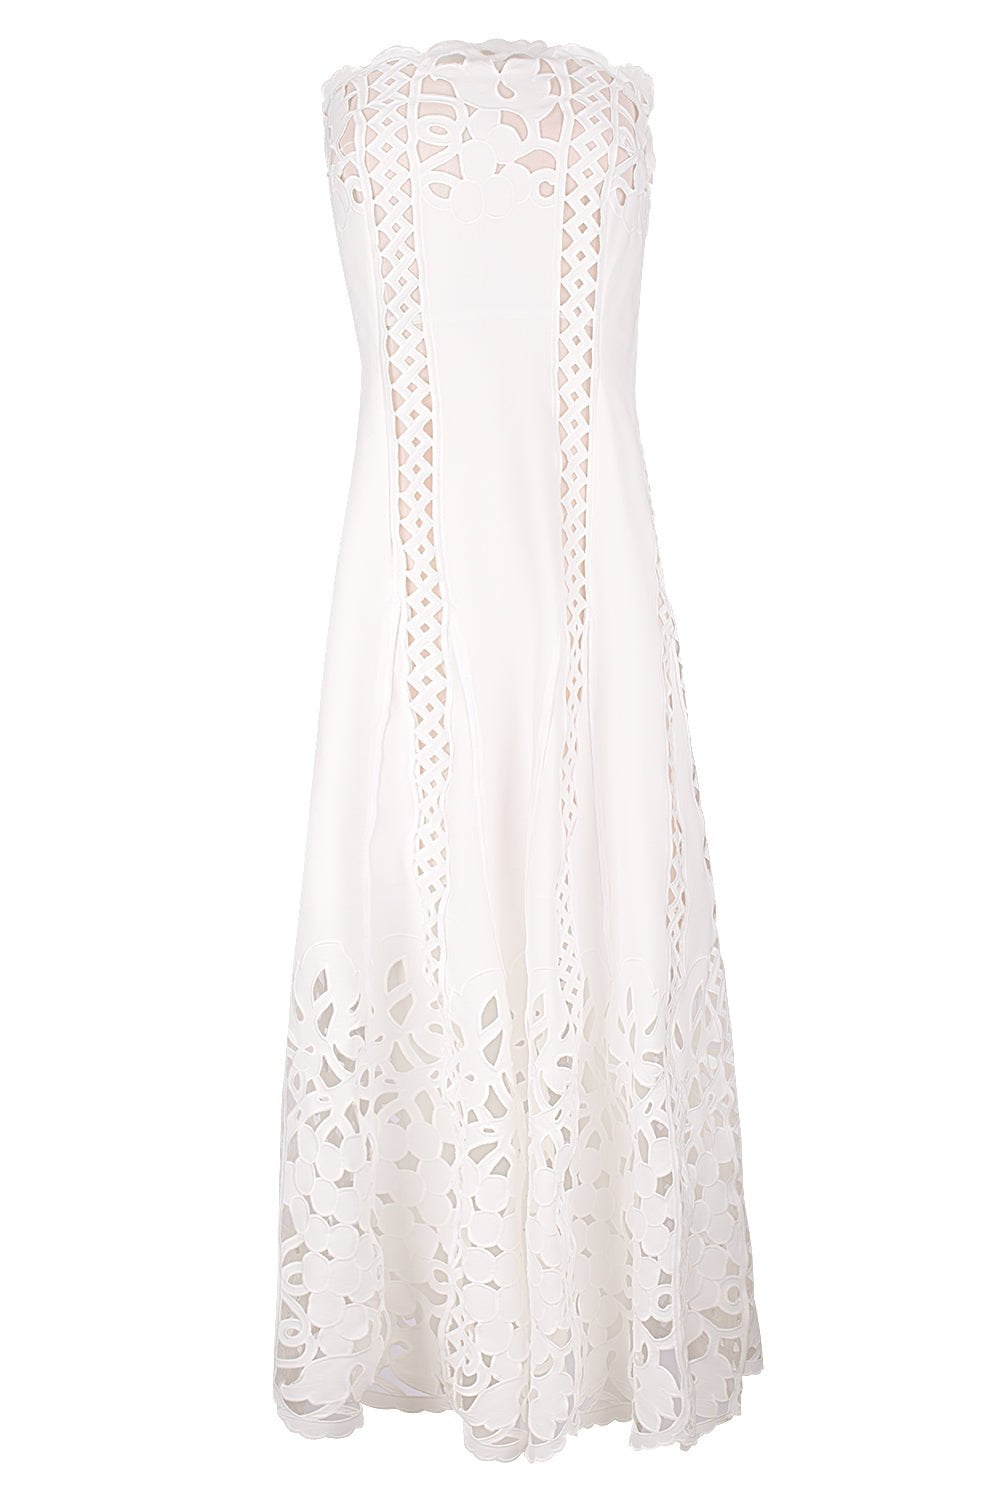 OSCAR DE LA RENTA-Strapless Floral A Line Dress-WHITE